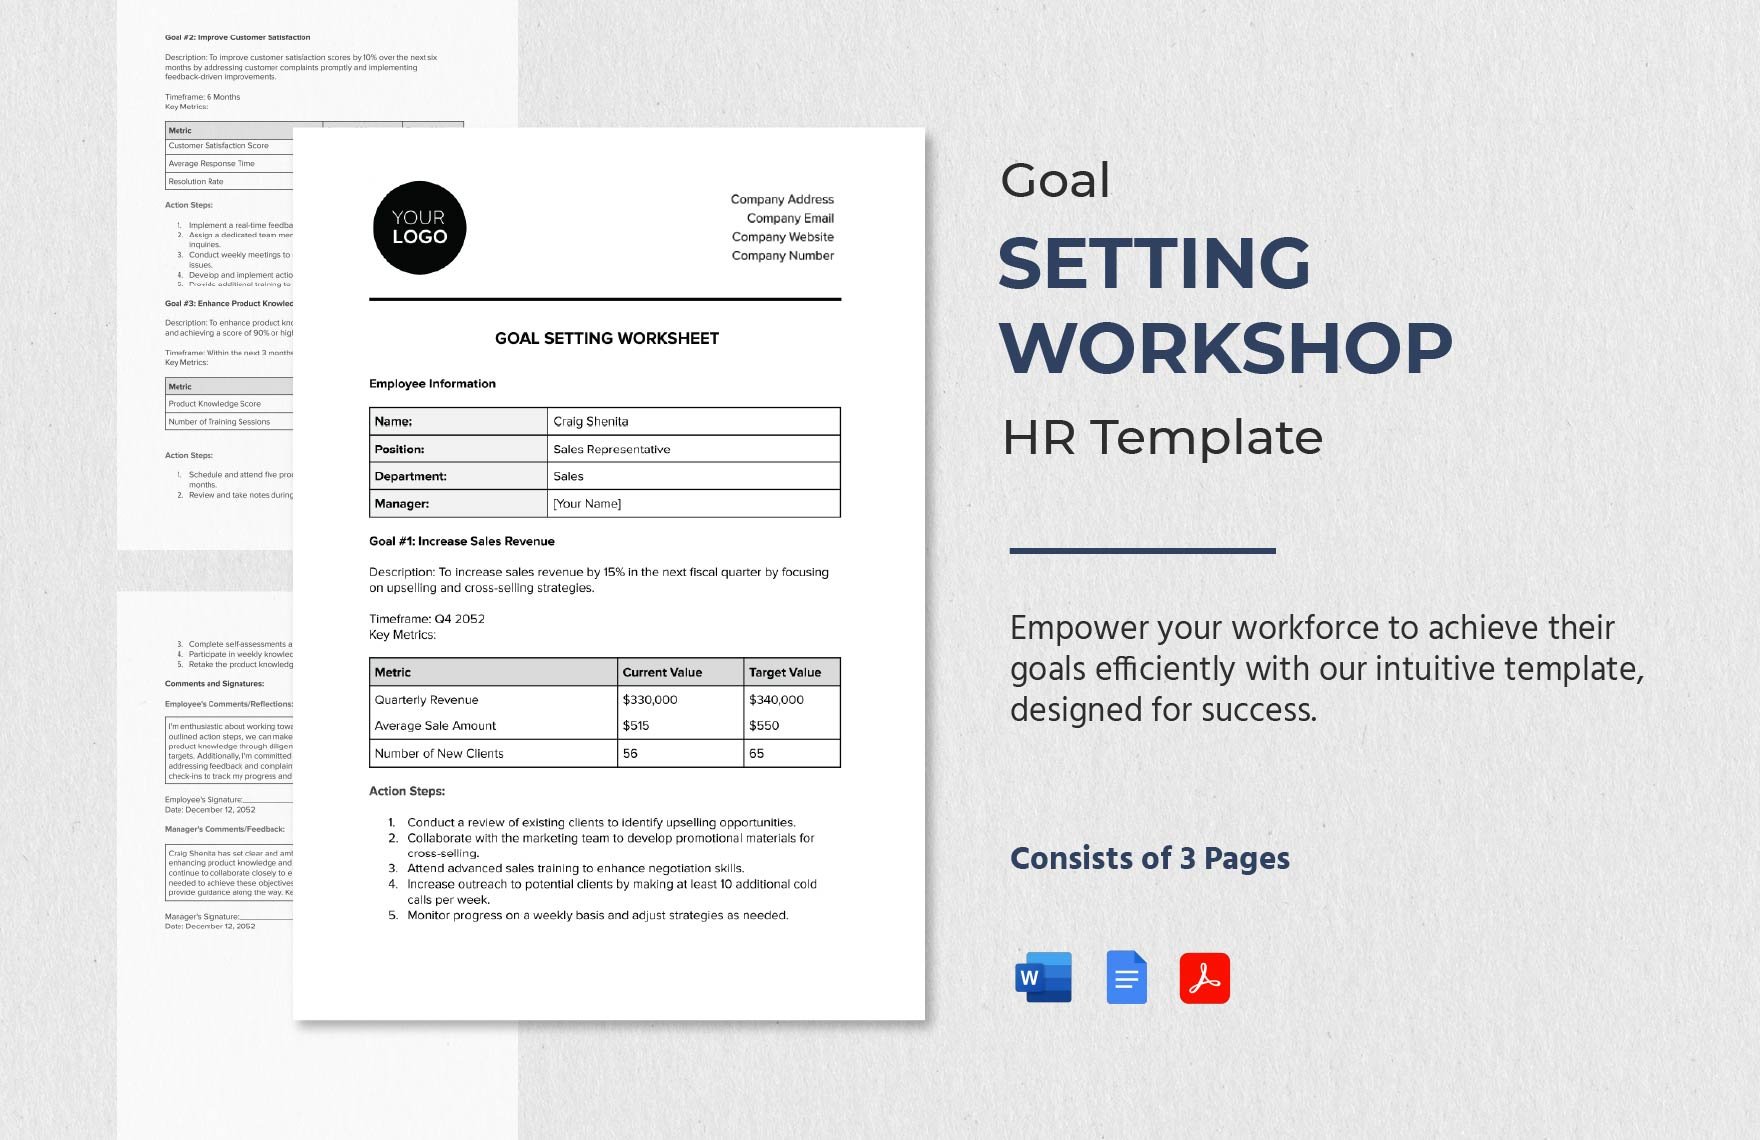 Goal Setting Worksheet HR Template